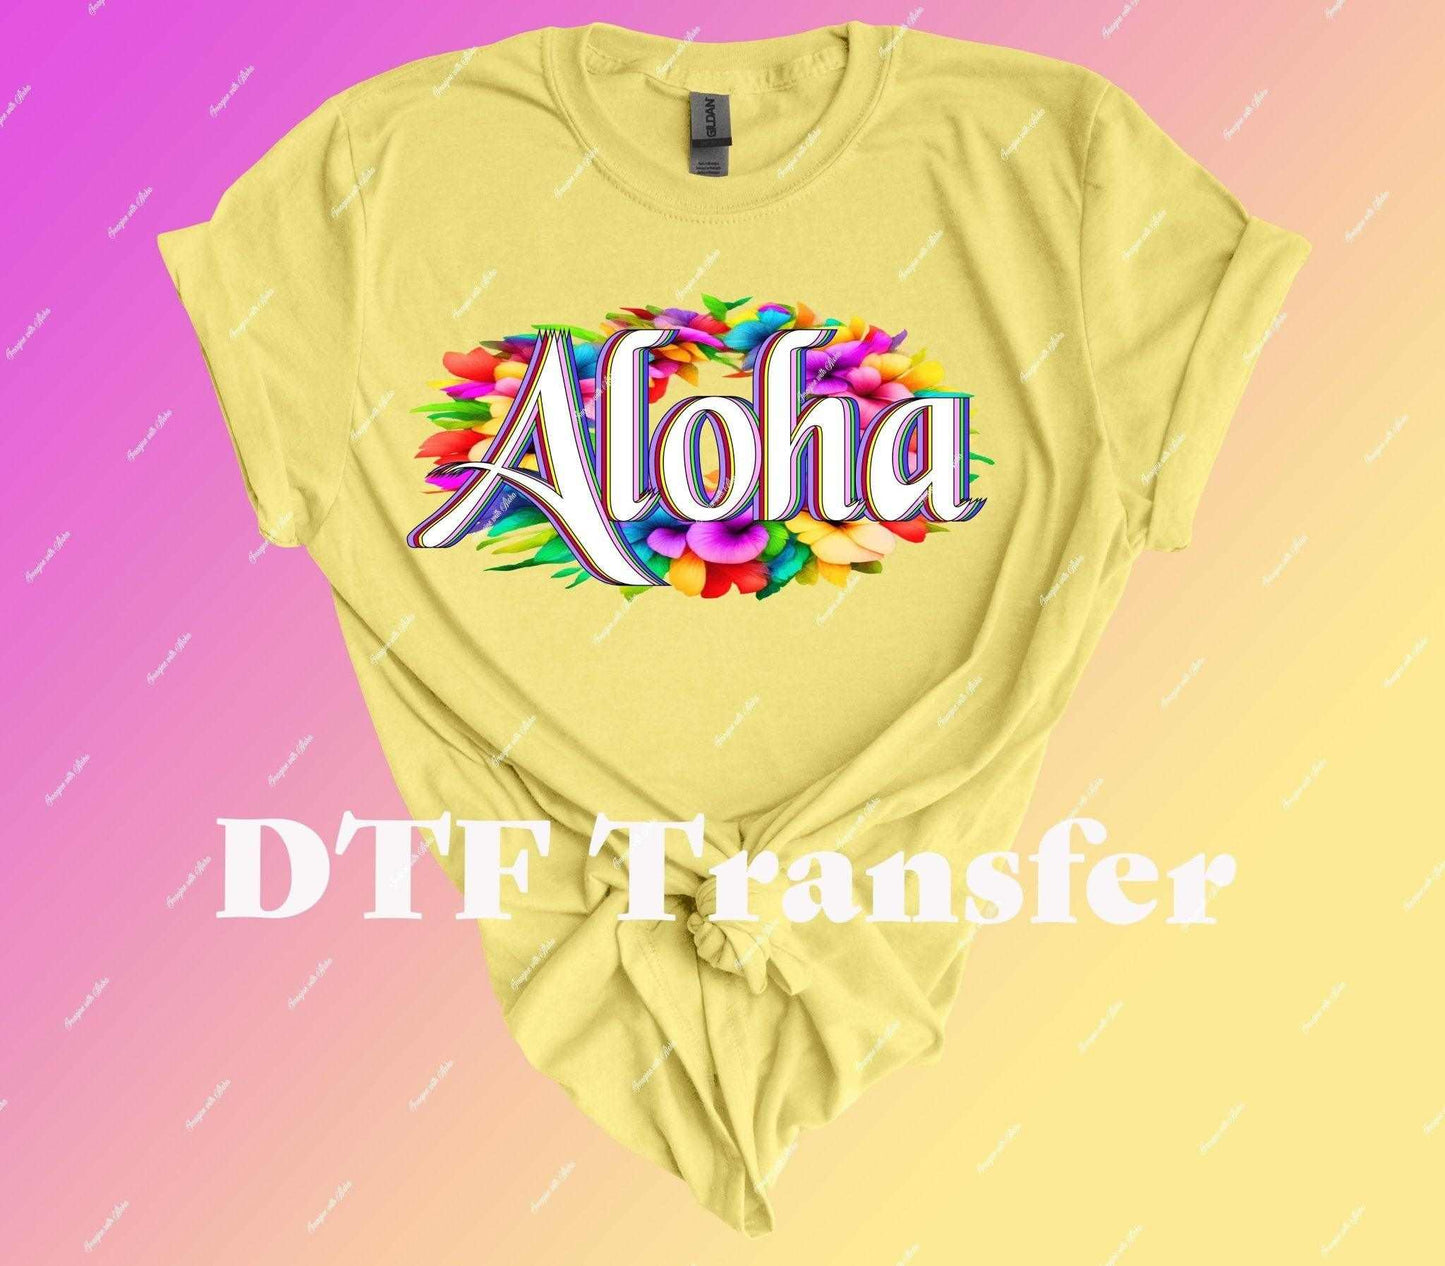 Aloha DTF Transfer - Imagine With Aloha